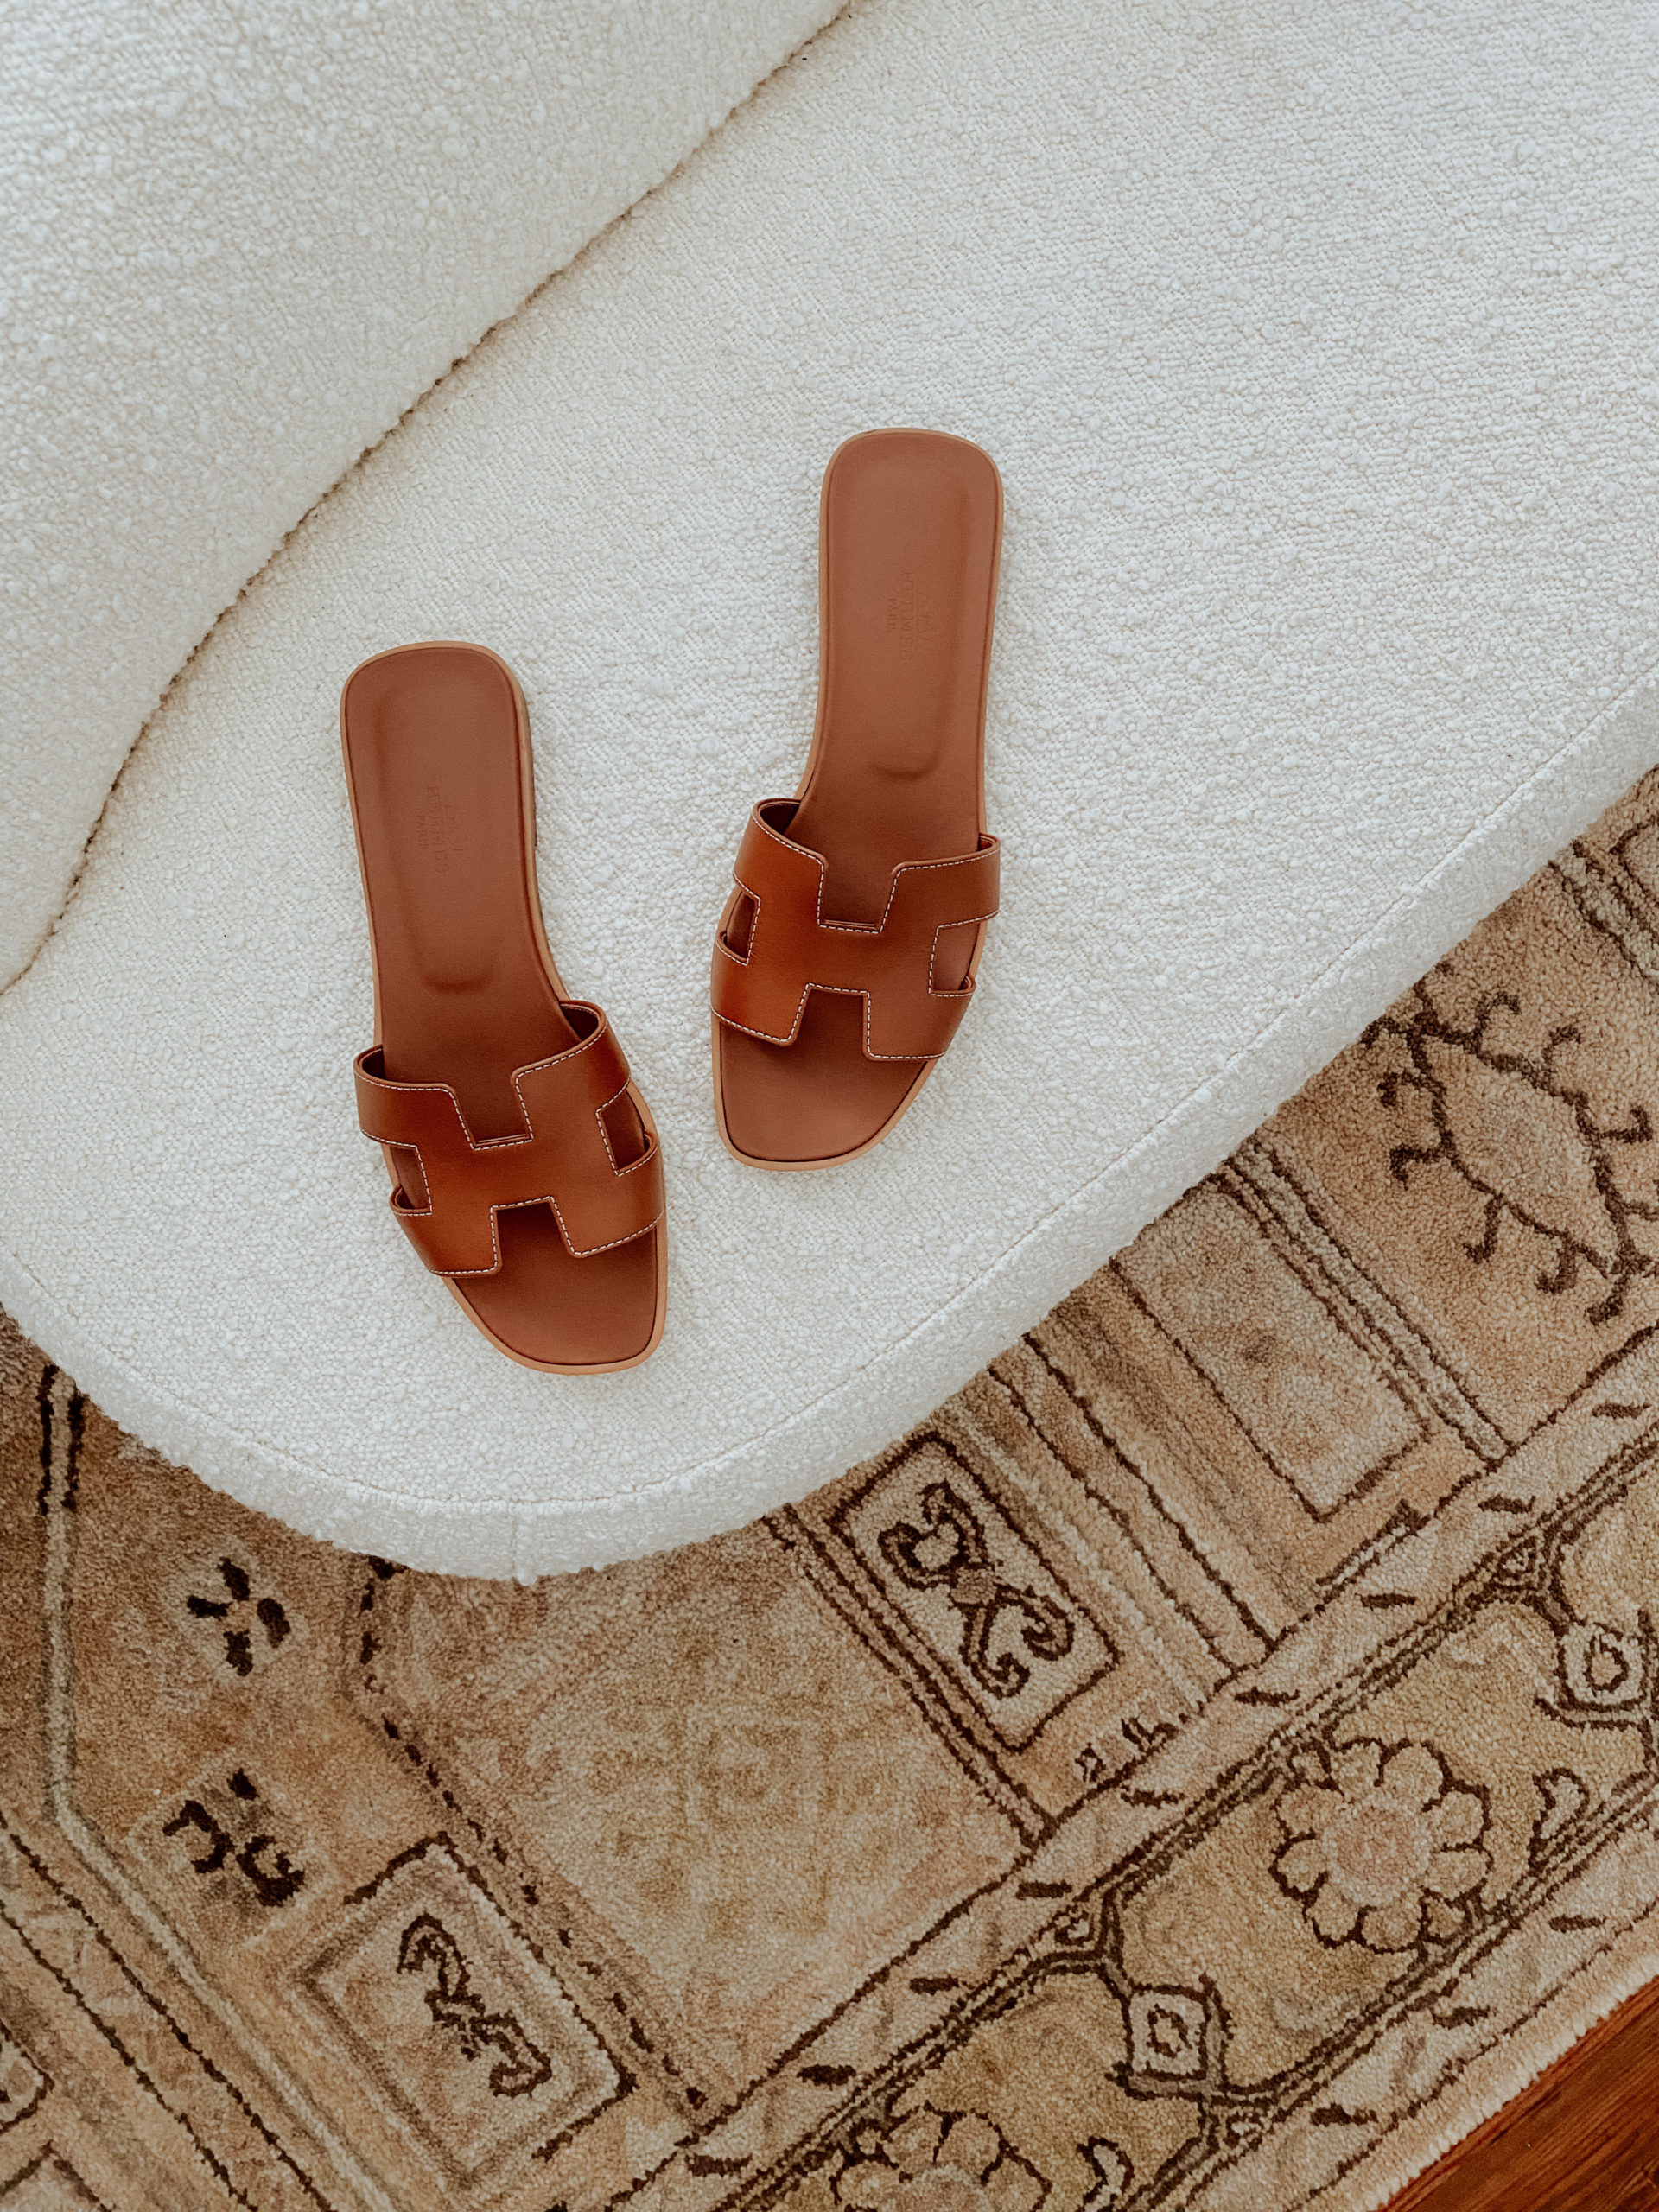 My Hermès Oran Sandal Review